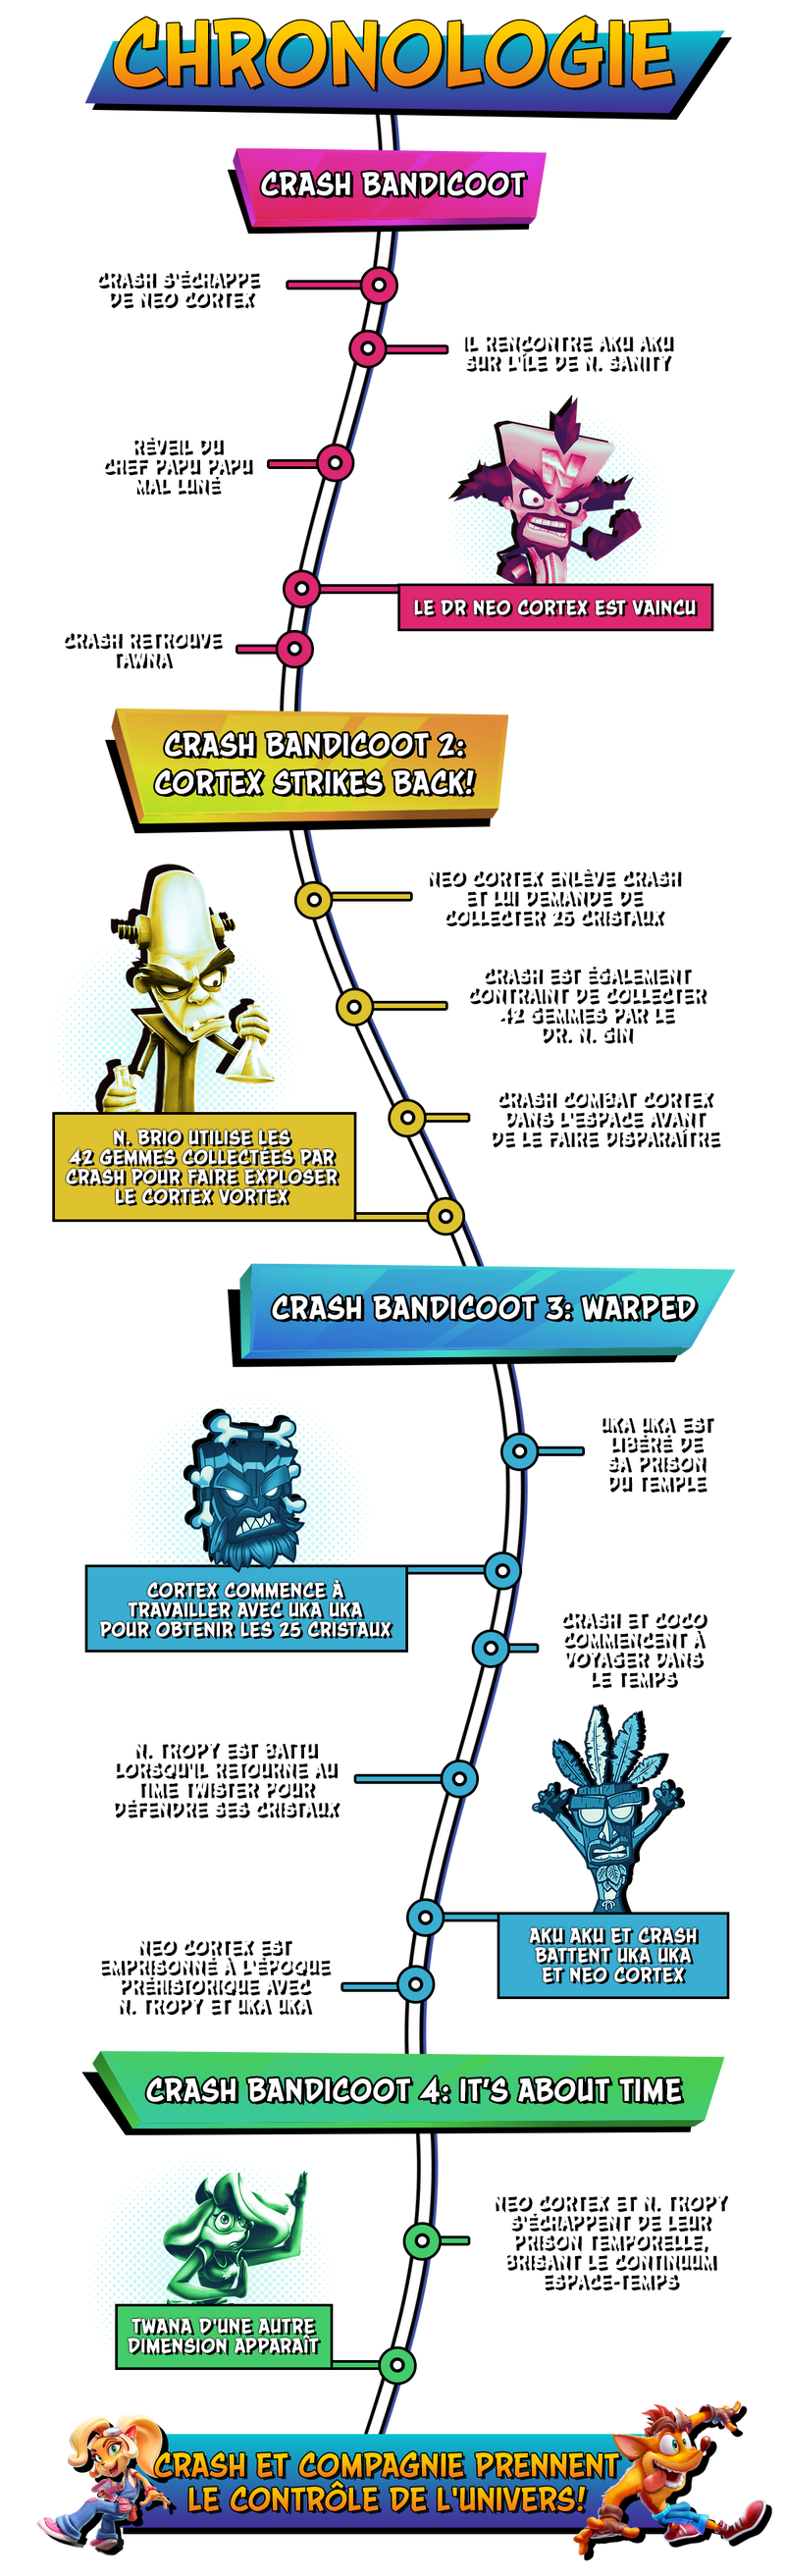 Chronologie de 'Crash Bandicoot 4: It's About Time' et de la trilogie N.  Sane | Fandom